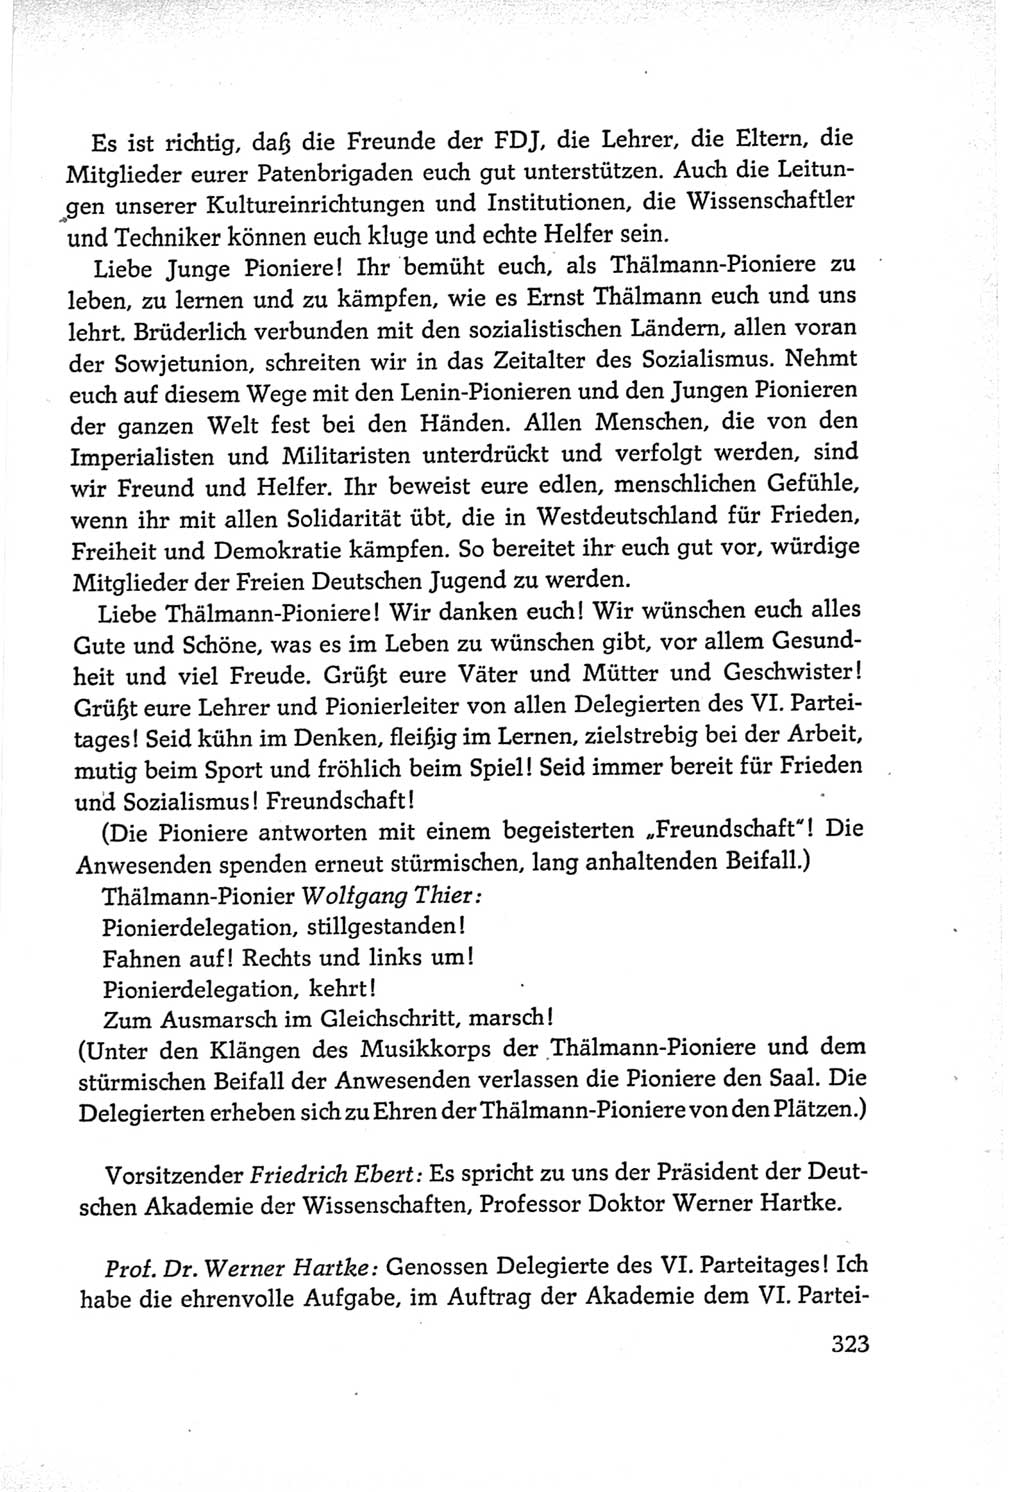 Protokoll der Verhandlungen des Ⅵ. Parteitages der Sozialistischen Einheitspartei Deutschlands (SED) [Deutsche Demokratische Republik (DDR)] 1963, Band Ⅱ, Seite 323 (Prot. Verh. Ⅵ. PT SED DDR 1963, Bd. Ⅱ, S. 323)